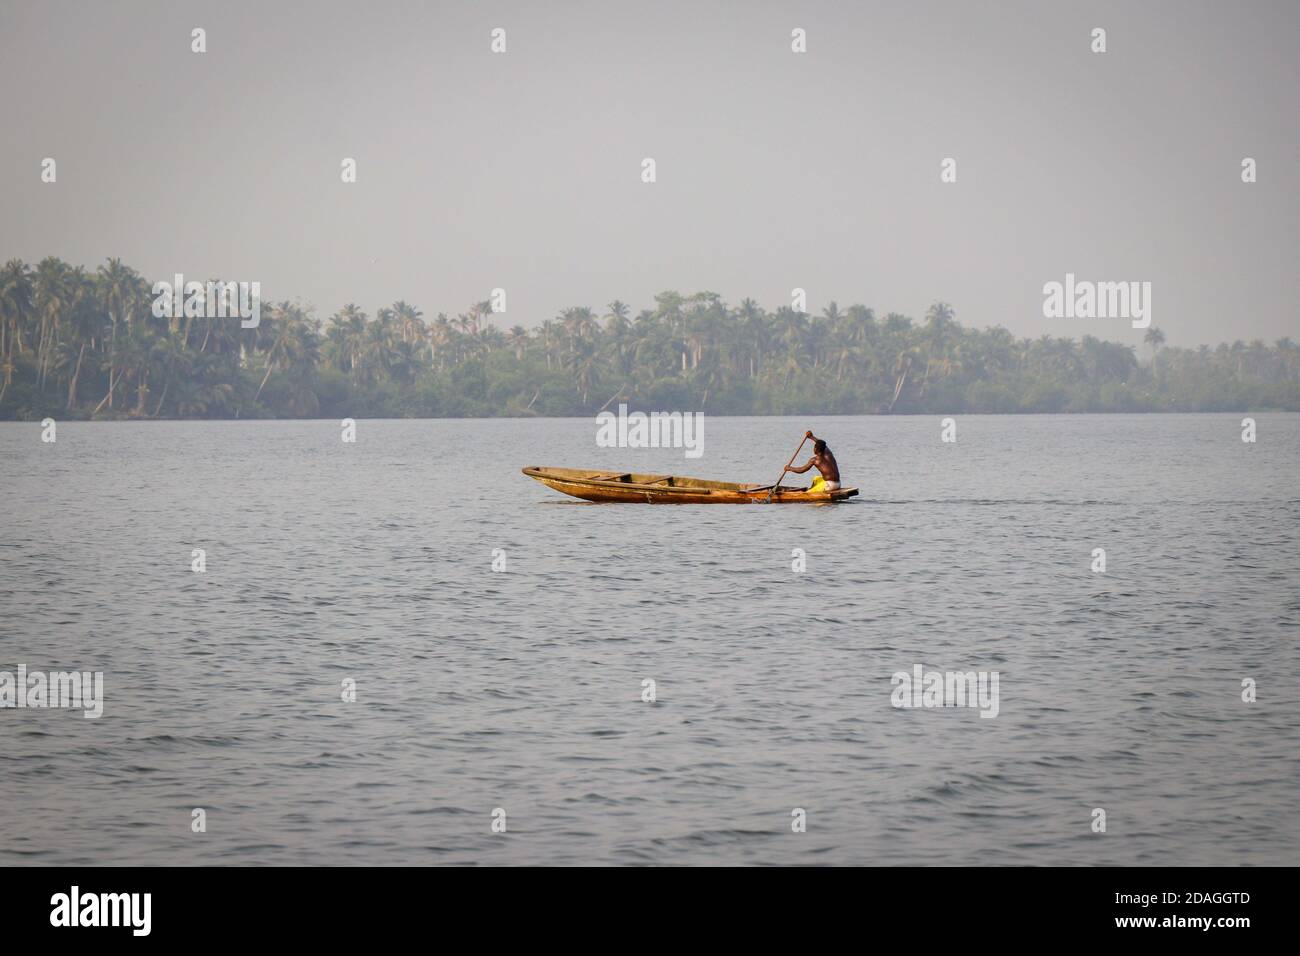 Bootsfahrt über die Lagune, Abidjan, Elfenbeinküste Stockfoto